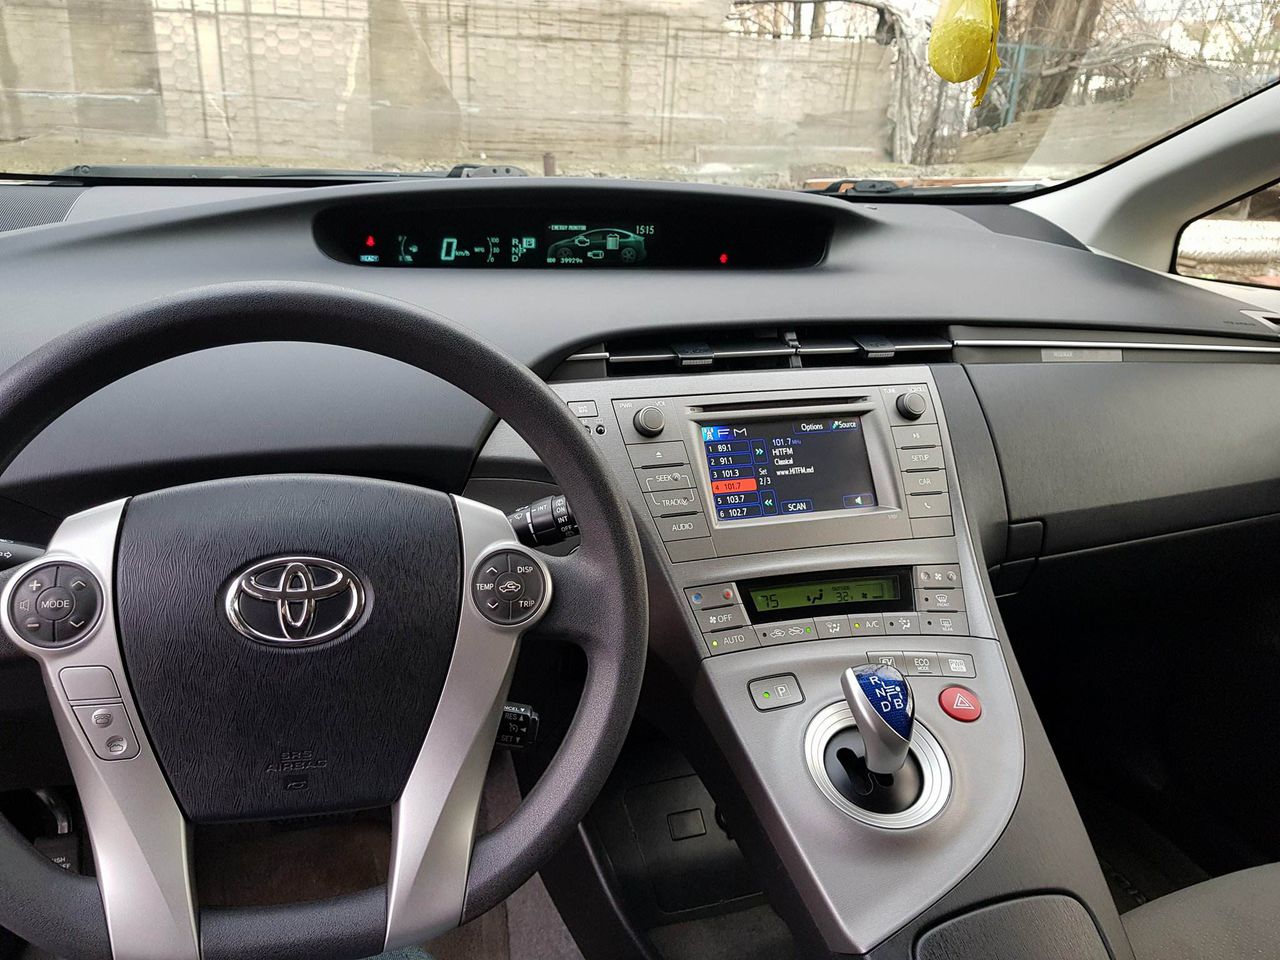 Toyota Prius - Аренда в Кишинёве, Молдове1